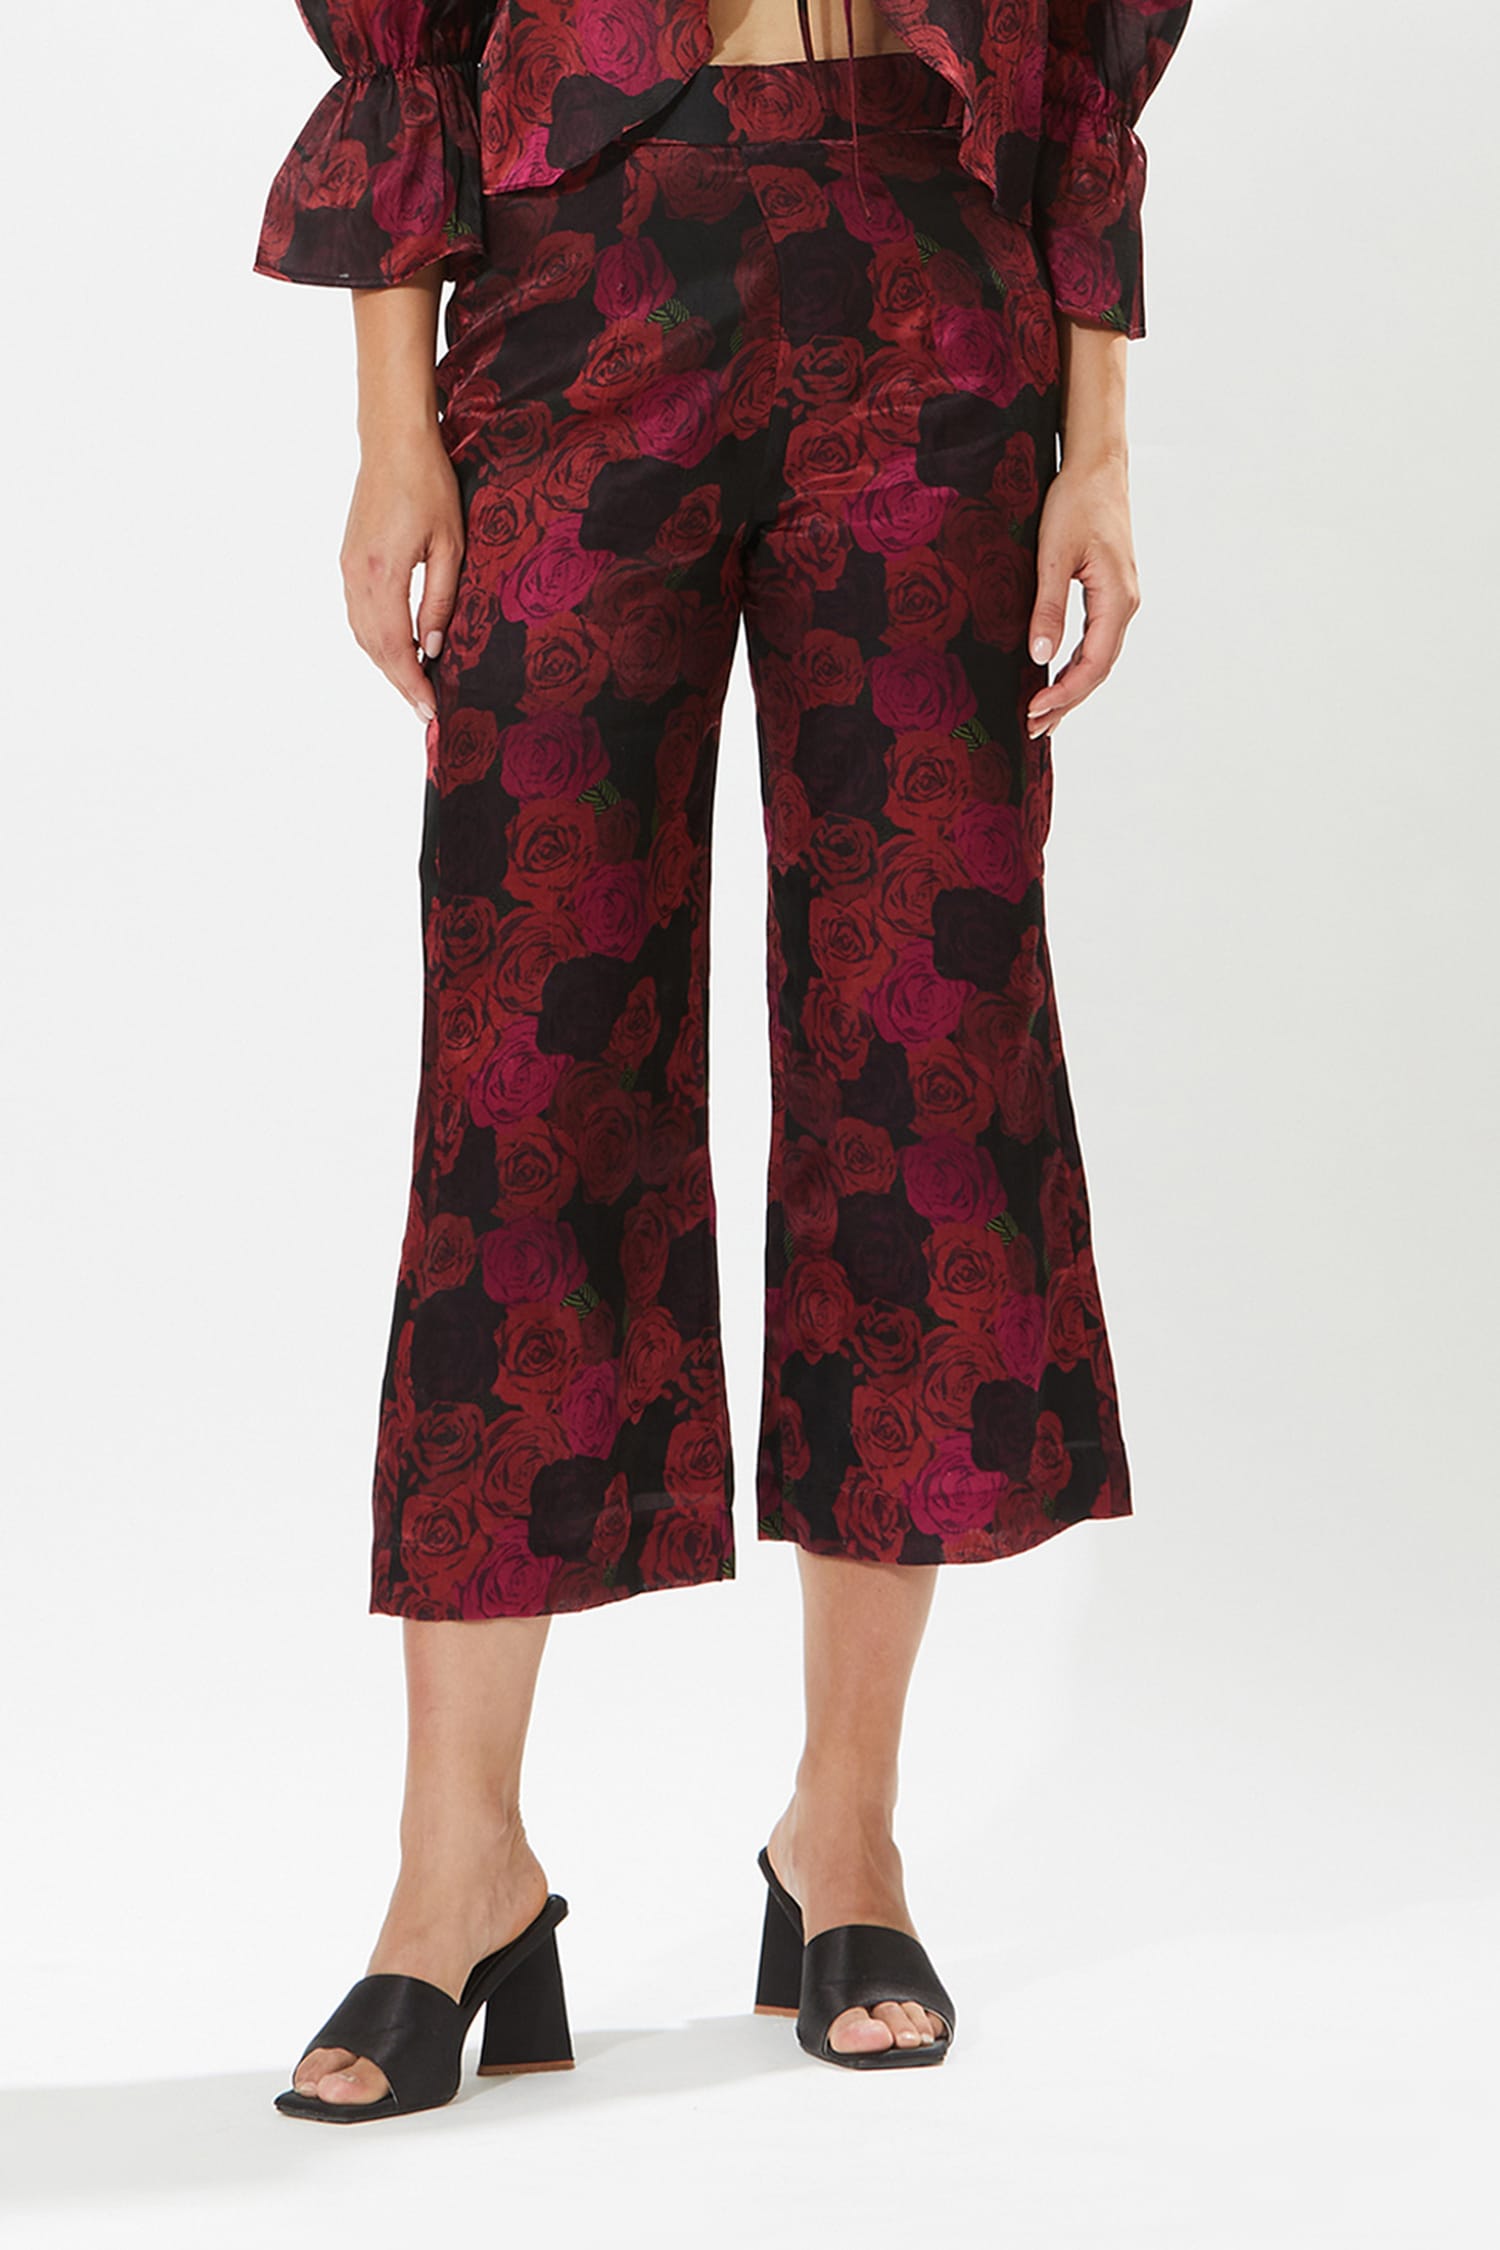 Buy Clora Maroon Hem Design Silk Trouser Online at Best Price  Clora  Creation